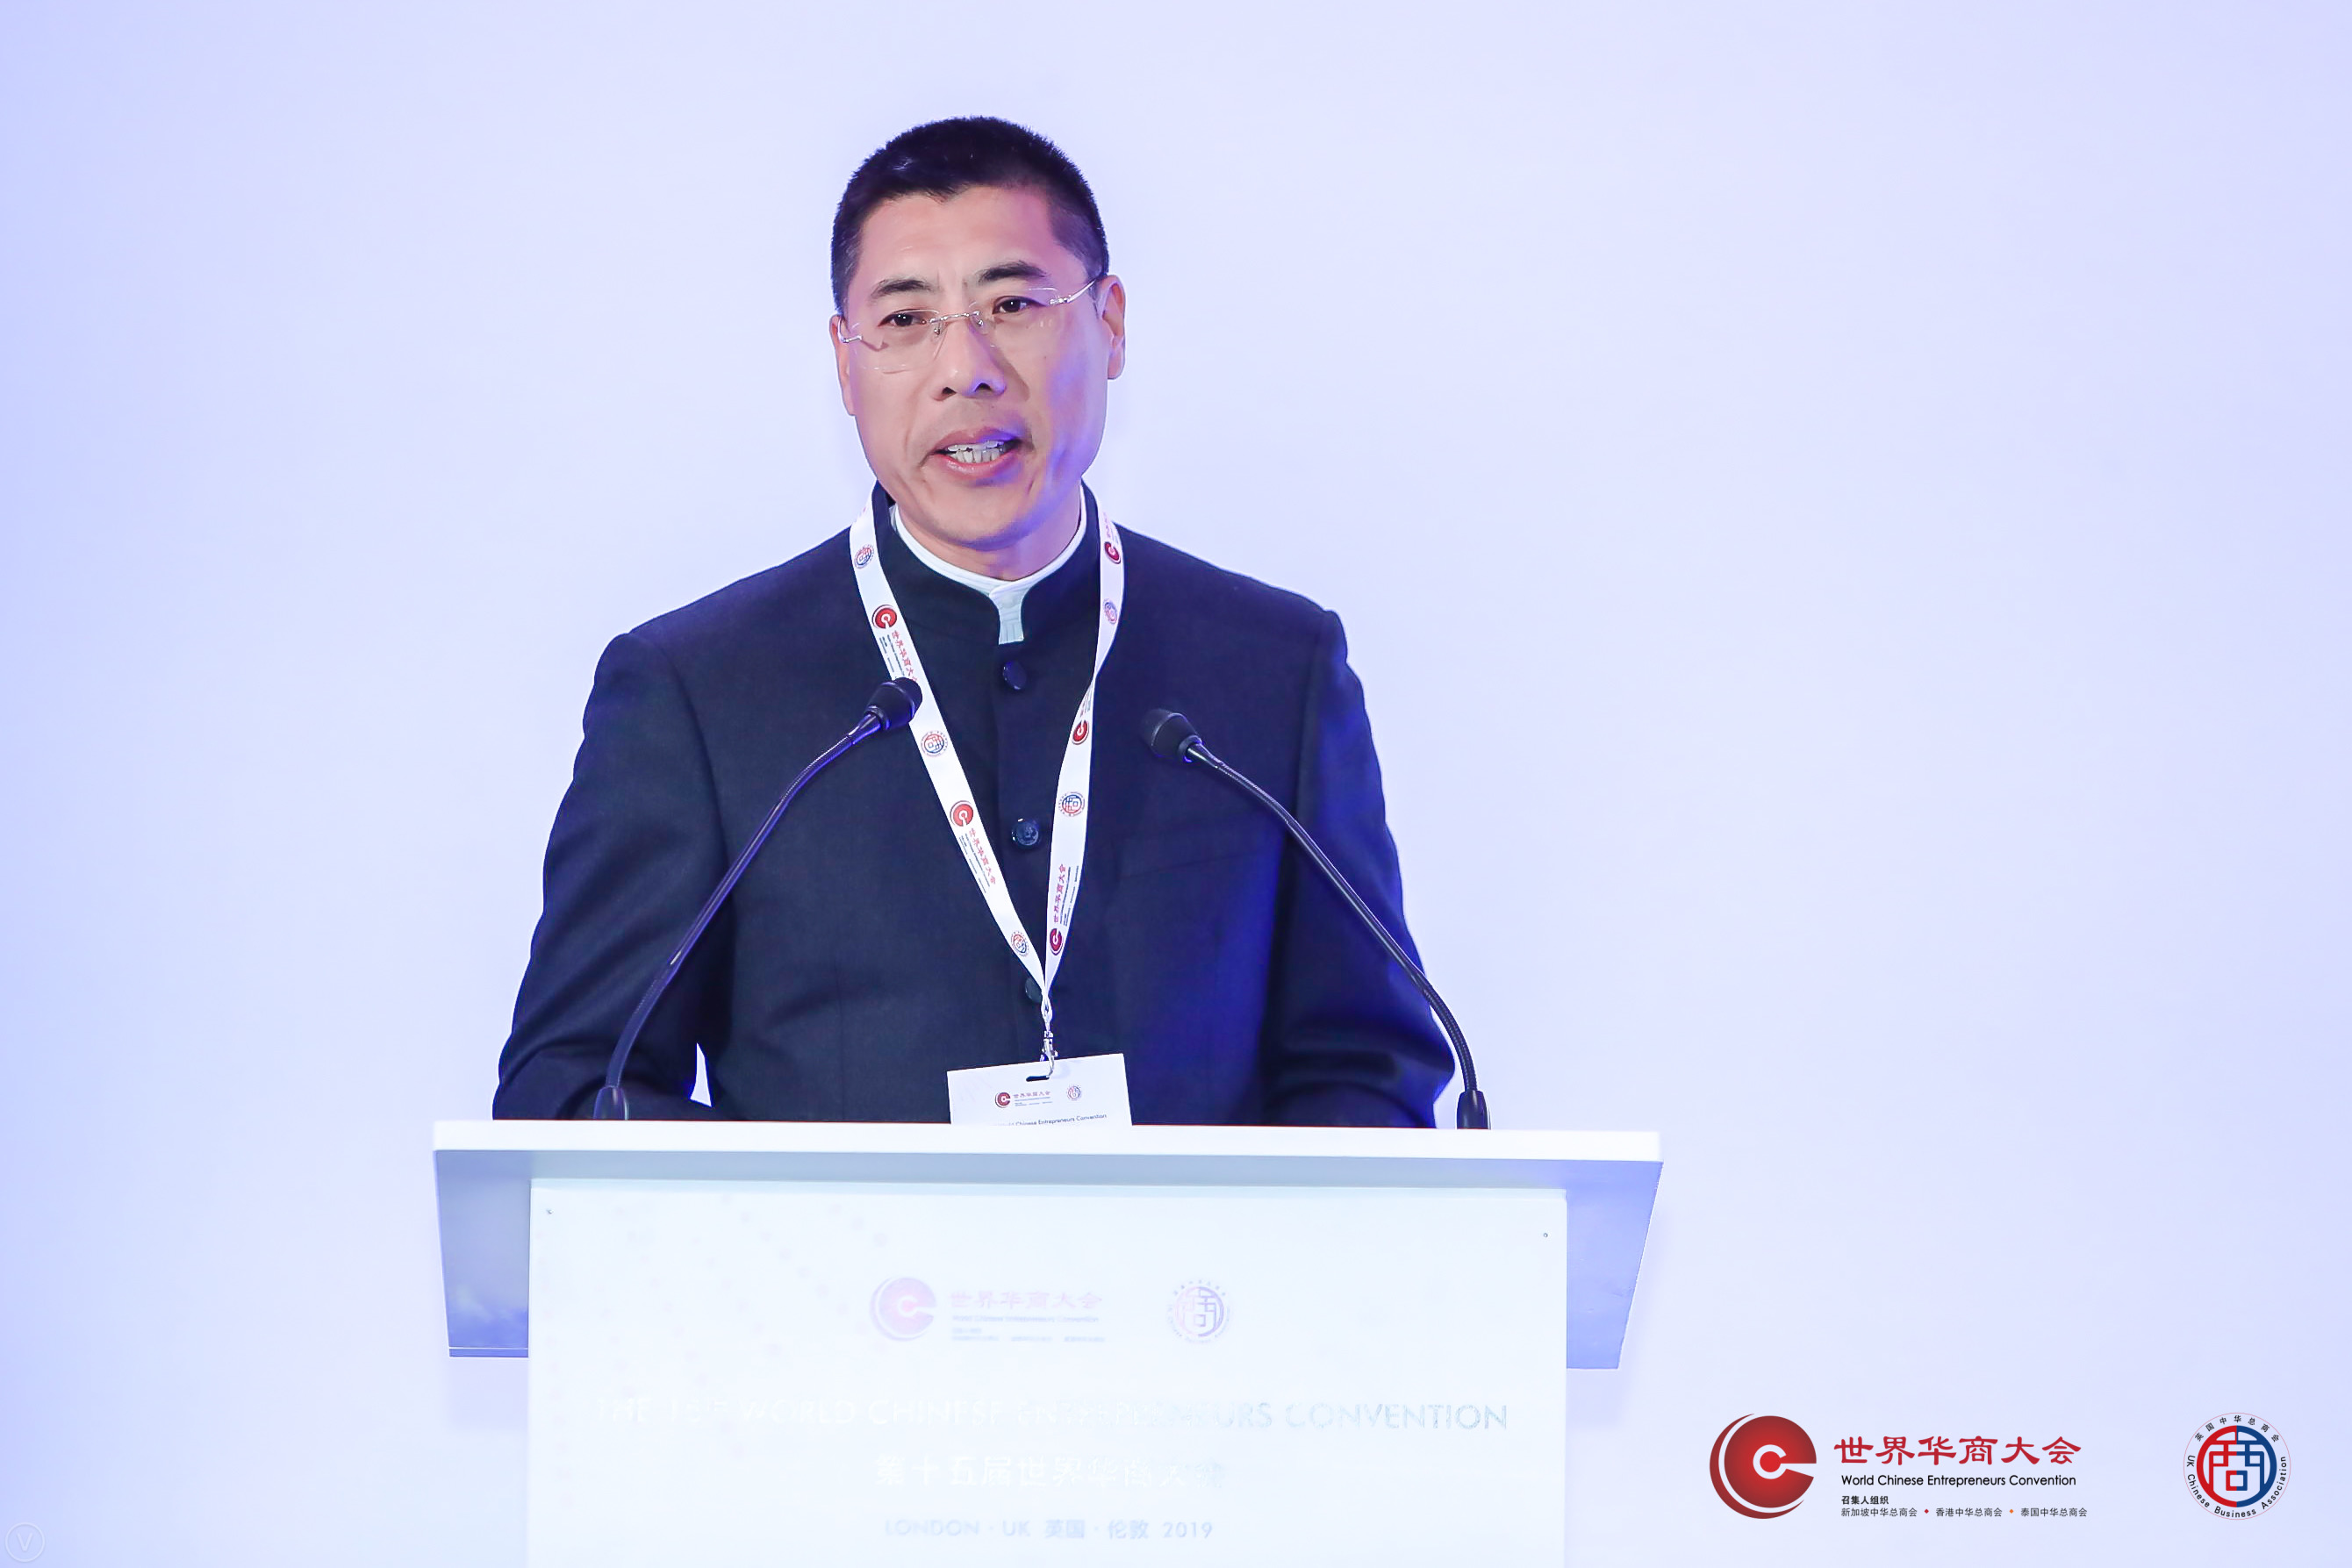 ＂执大象 天下往＂ - 神玉文化集团董事长王伟斌在第15届世界华商大会的演讲